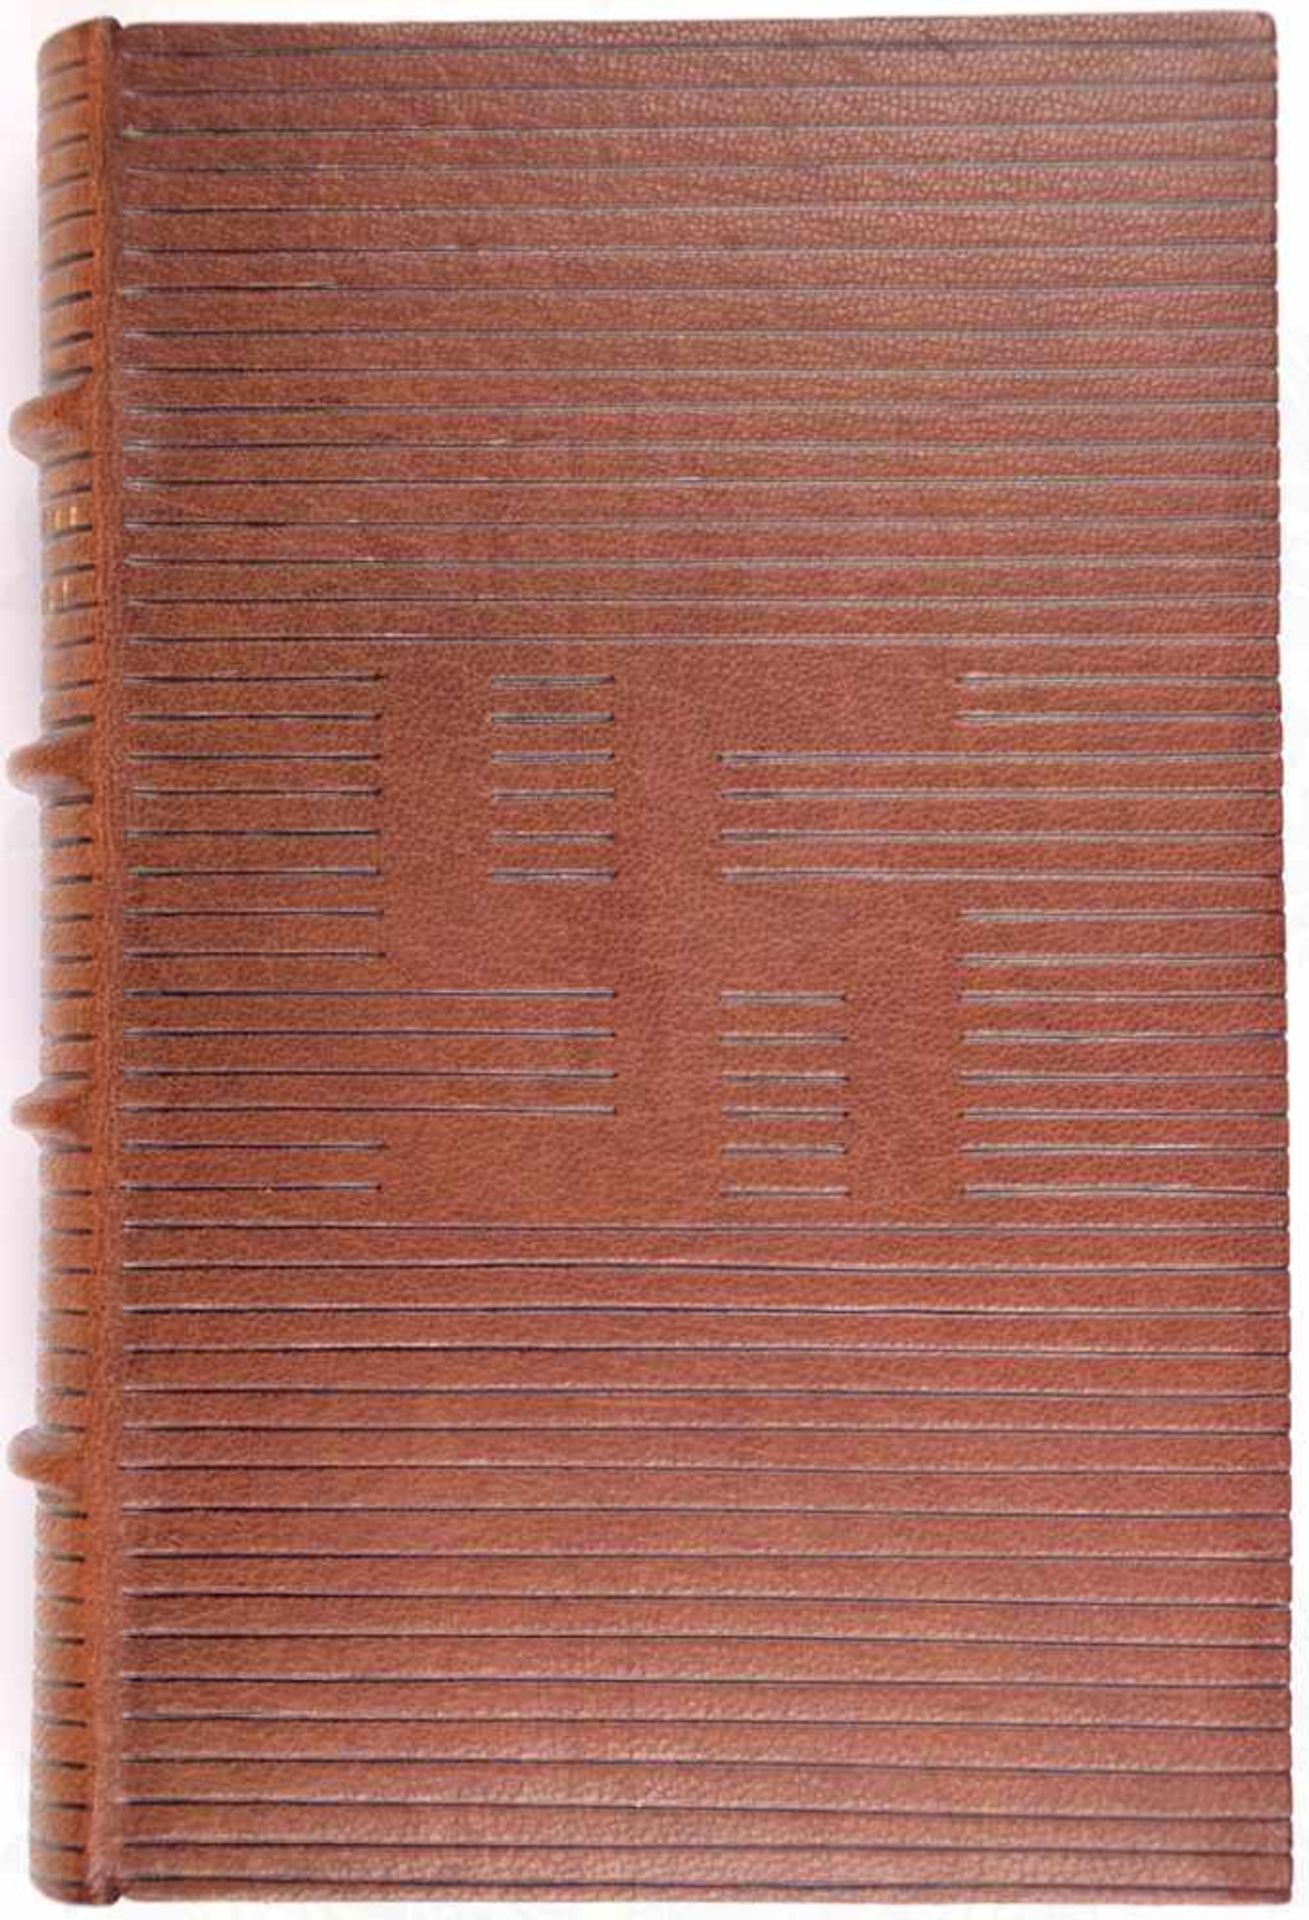 MEIN KAMPF, Meistereinband in Ganzleder mit 4 Bünden u. goldgepr. Rückentitel, Adolf Hitler, - Bild 4 aus 6